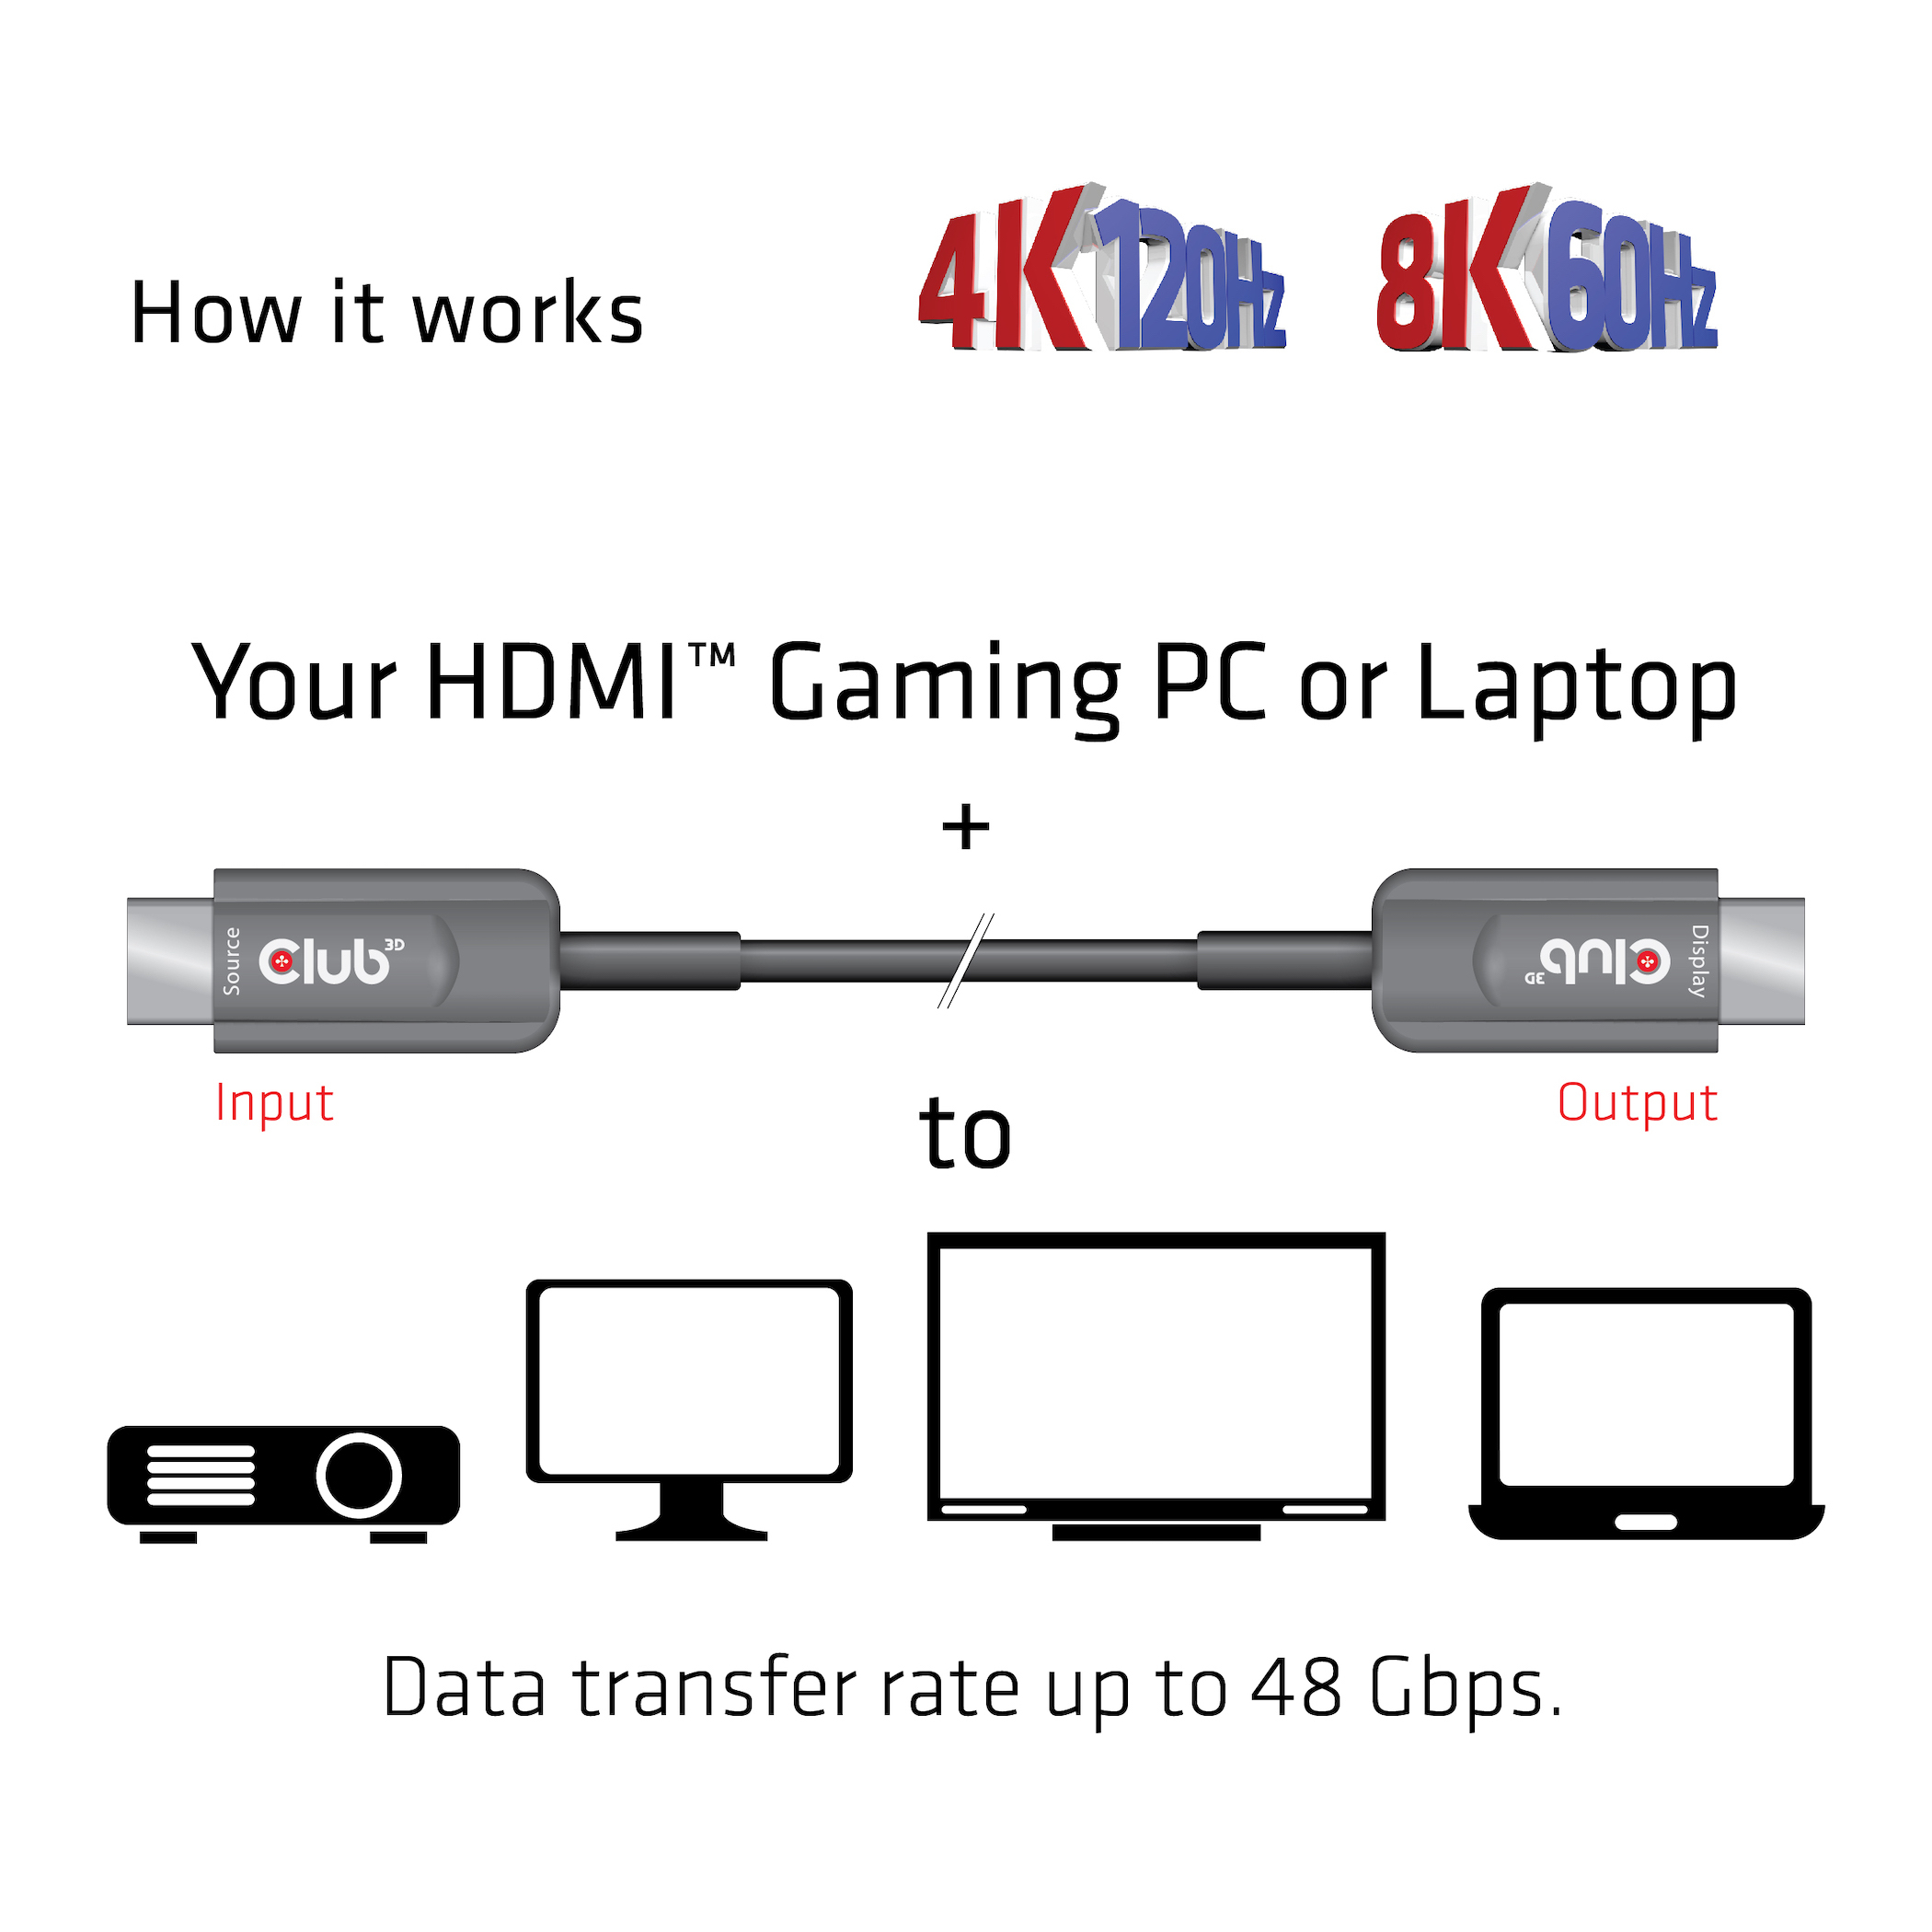 HIGH SPEED HDMI AOC CABLE 8K60HZ  4K120HZ 15M/ 49.2 FT M/M CERTIFIED